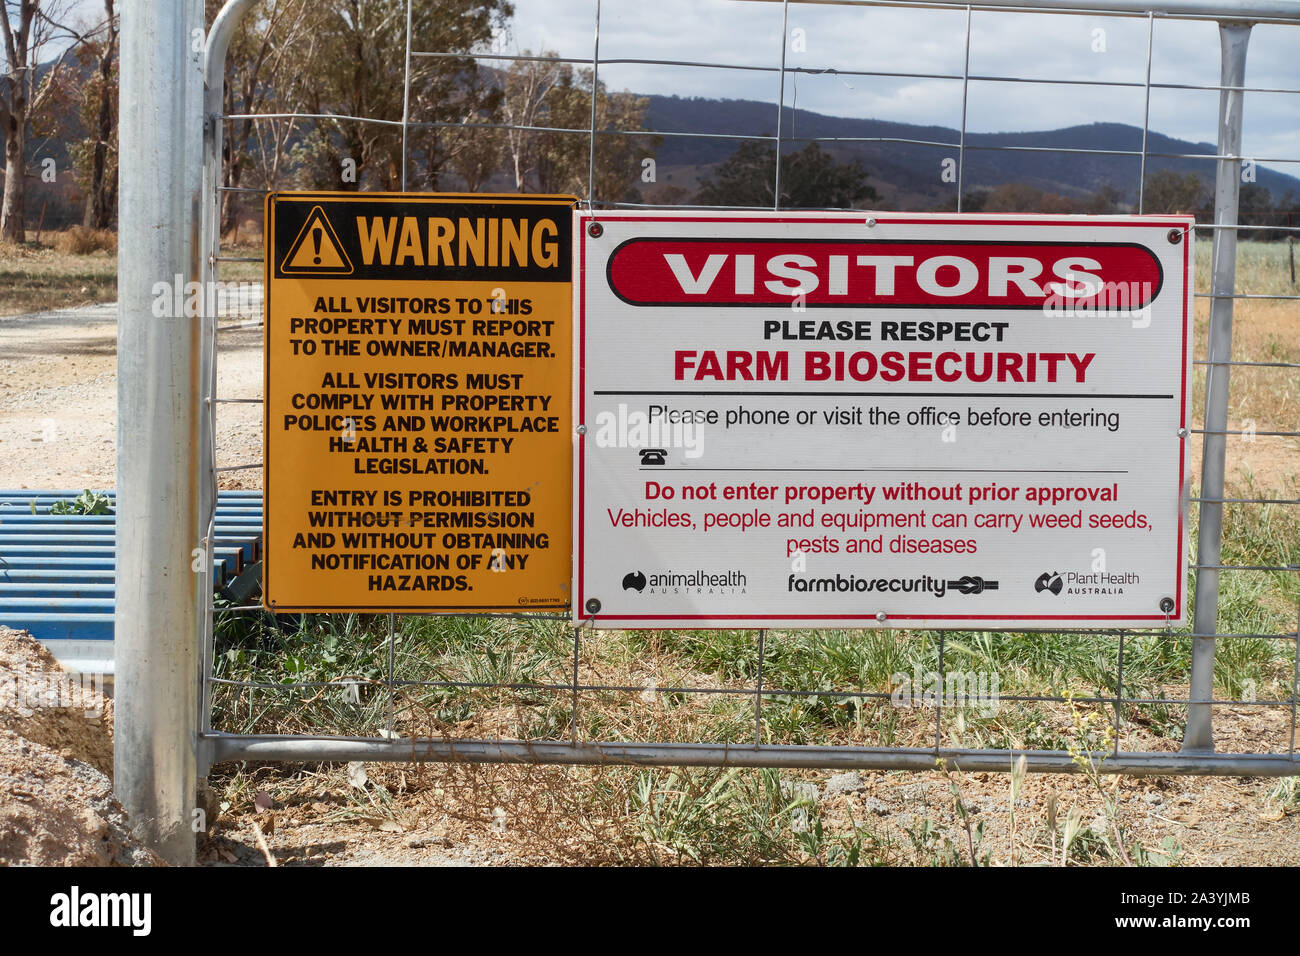 Panneau d'avertissement - Respect de la sécurité à la ferme bio. N'entrez pas sans approbation. District Tamworth NSW Australie. Banque D'Images